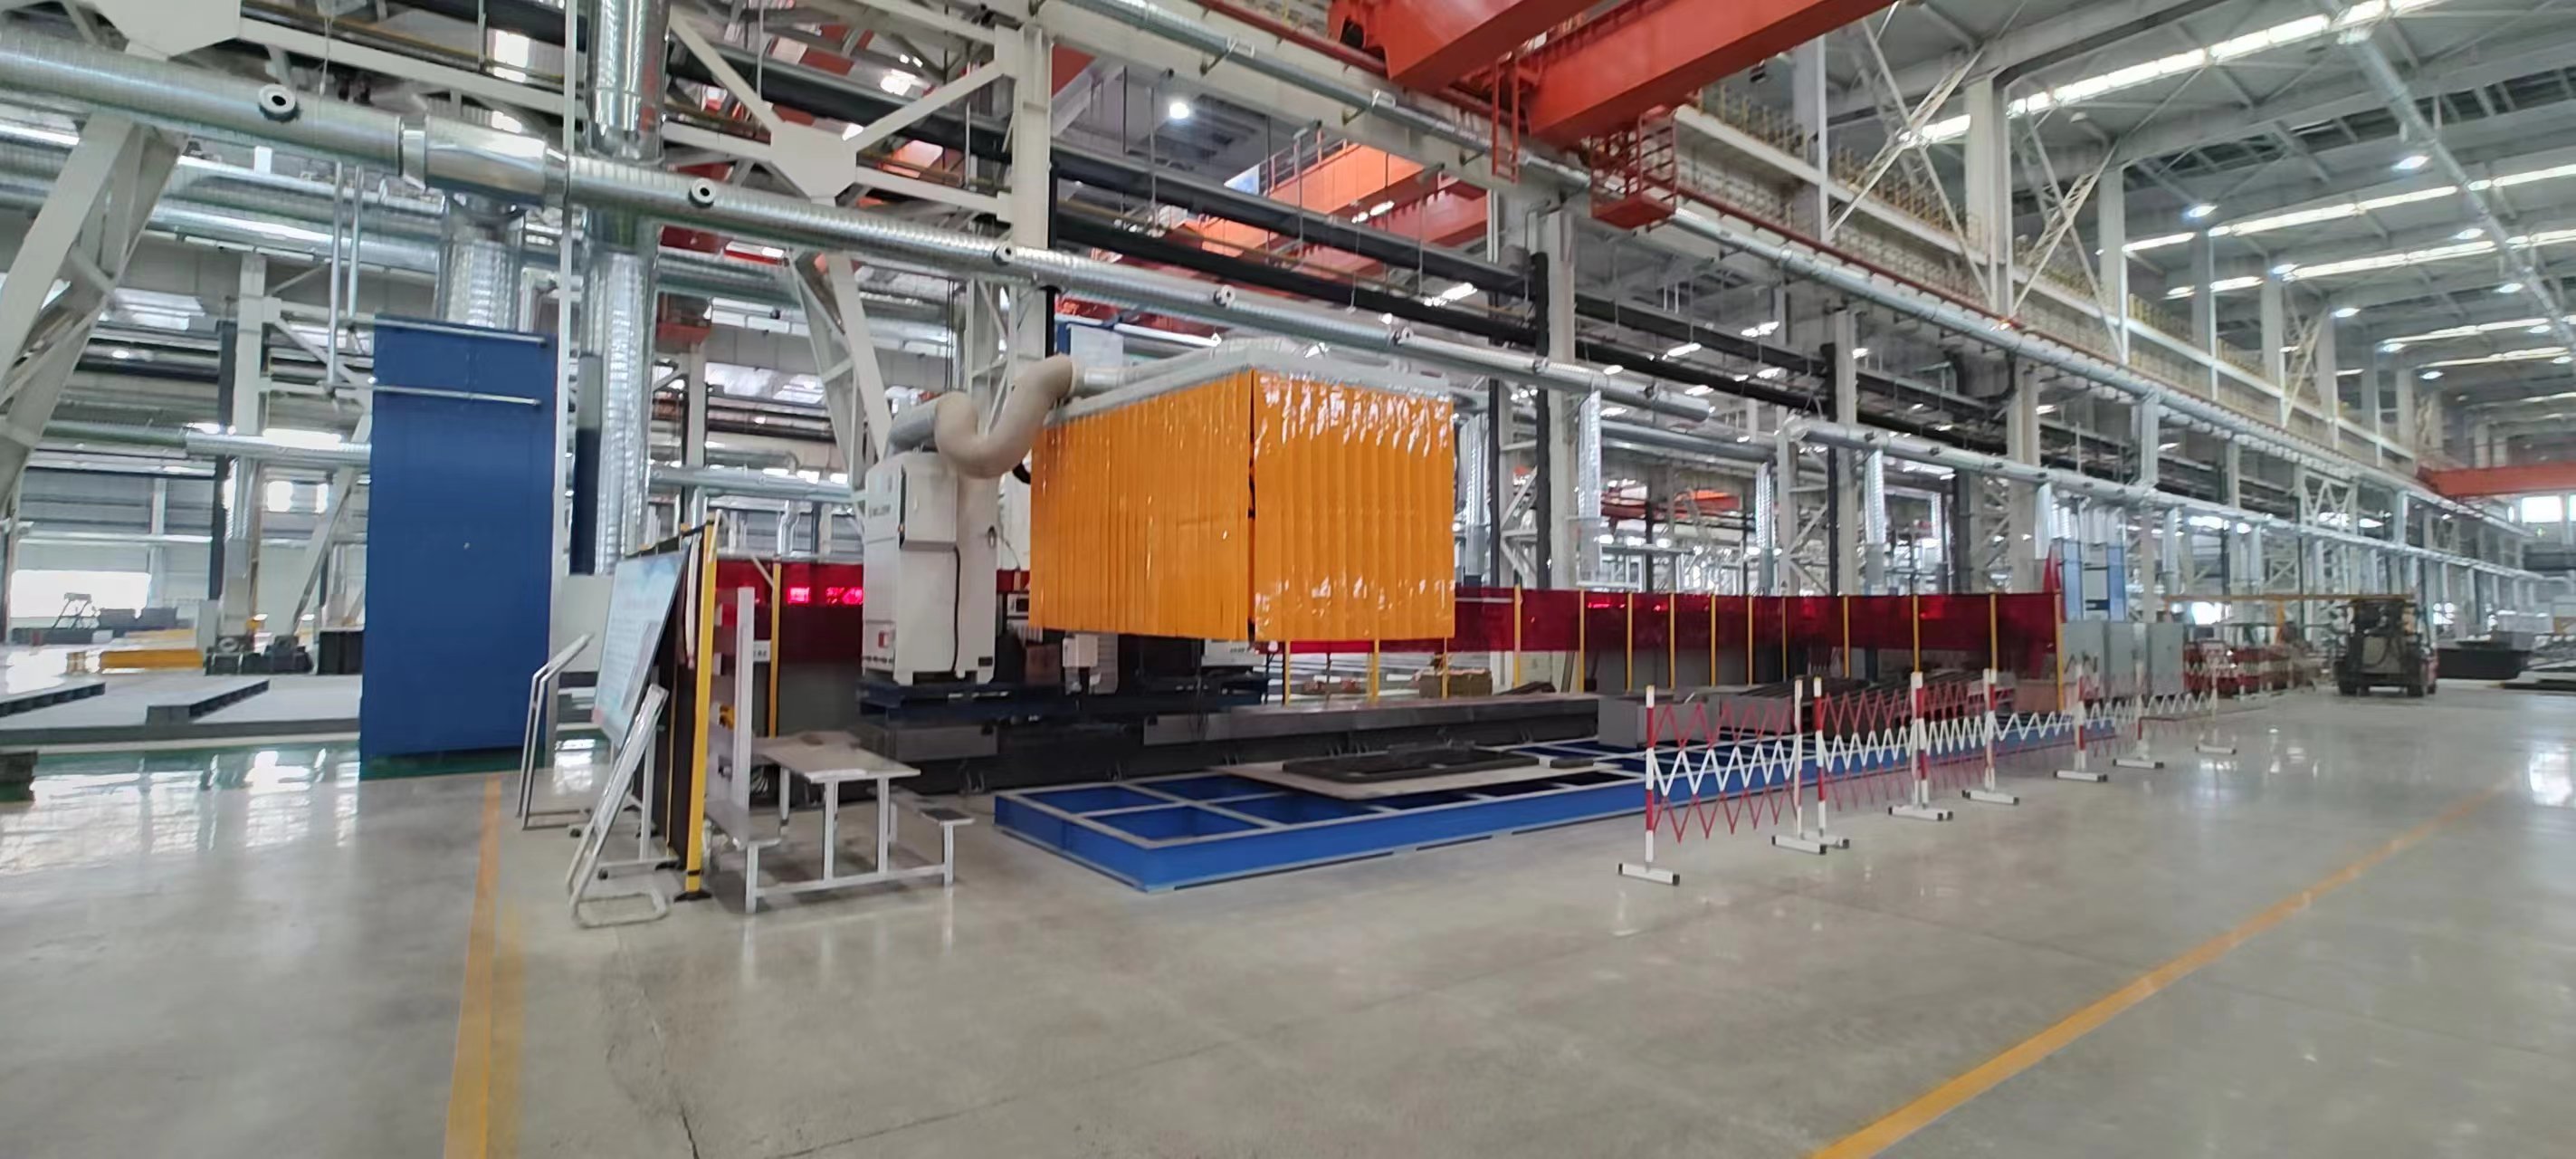 某大型重型装备制造国企仁新机器人焊机工作站